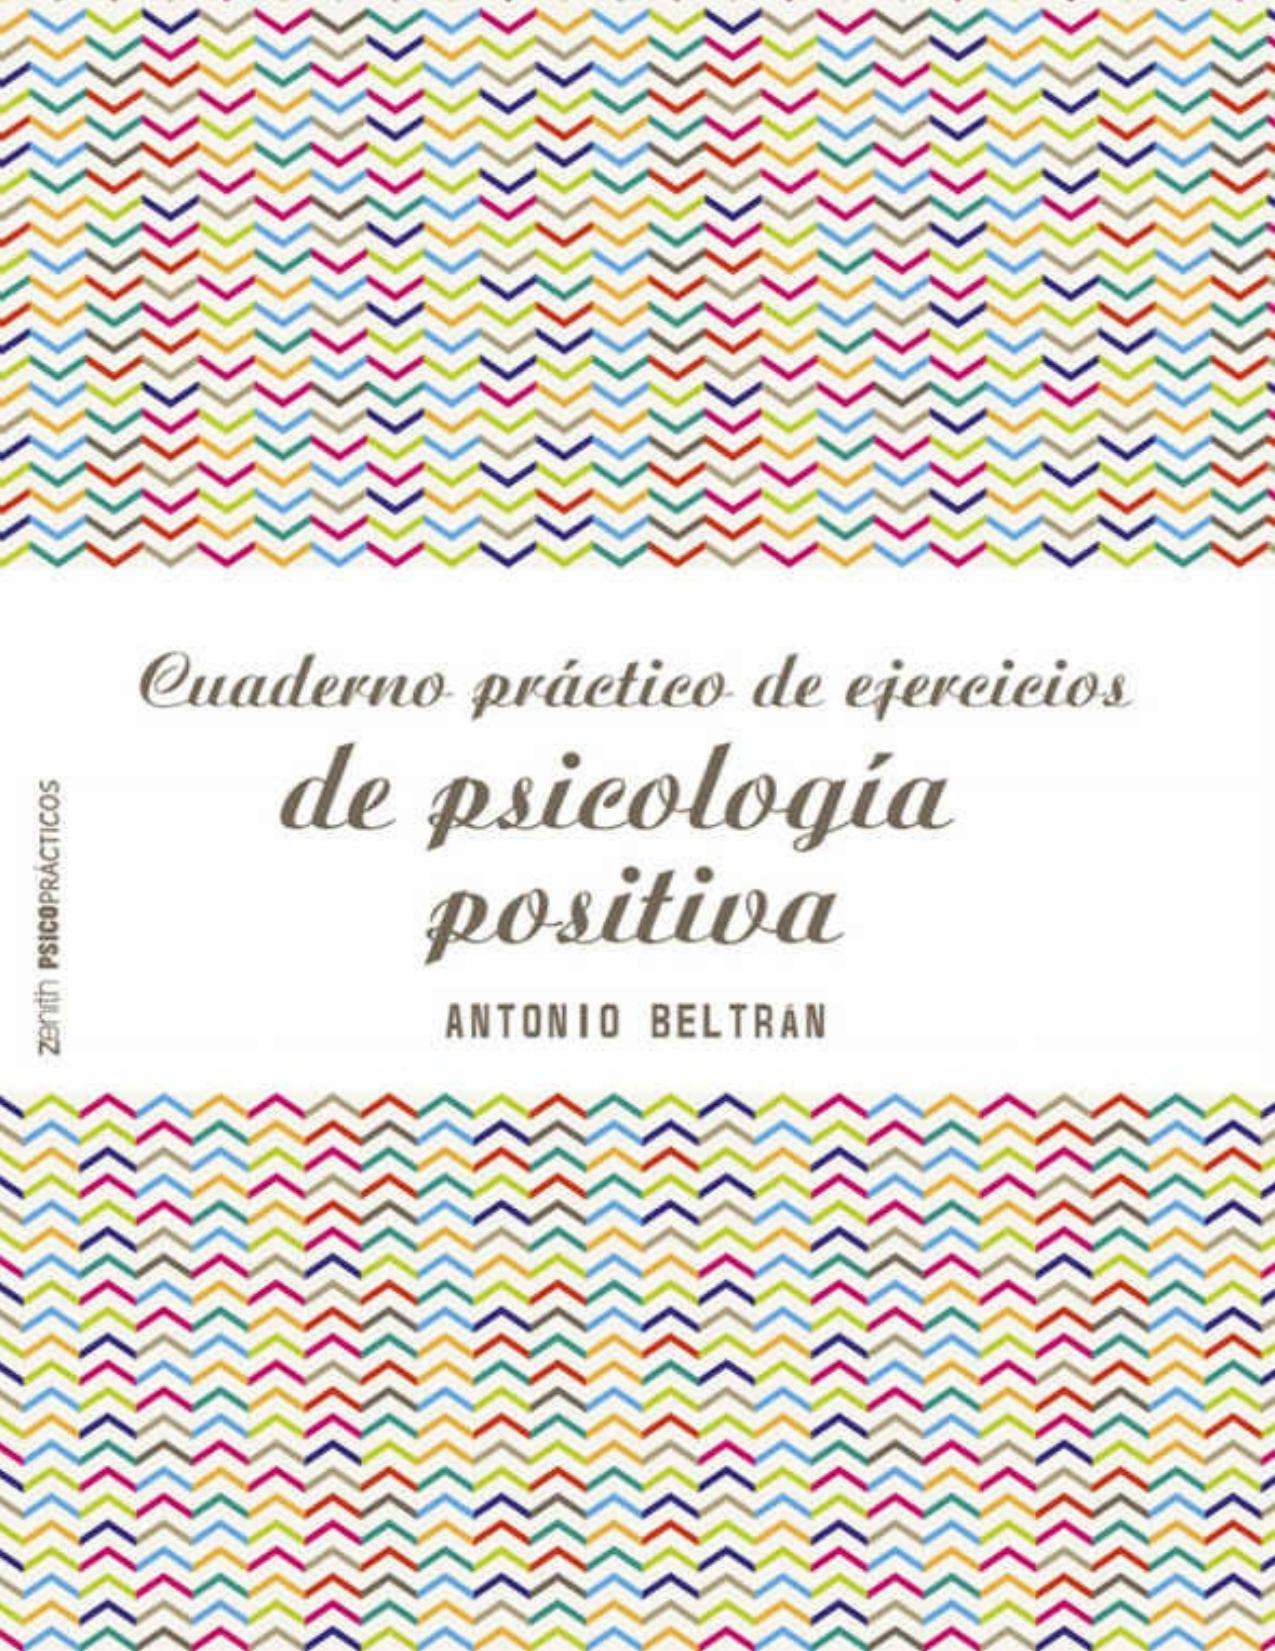 Cuaderno práctico de ejercicios de psicología positiva (Spanish Edition)